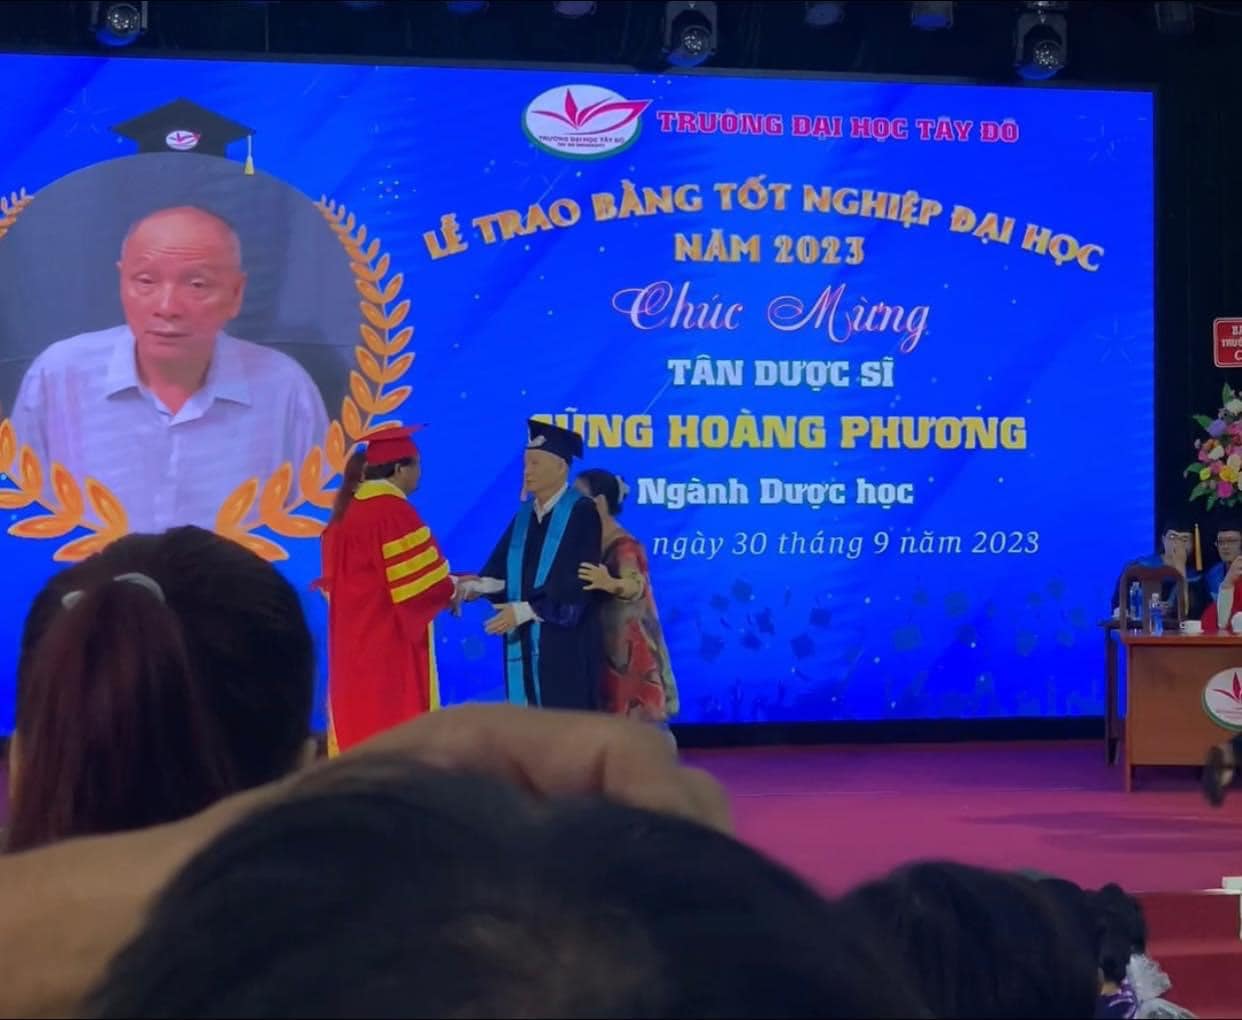 Cụ ông chân đi không vững được dìu lên nhận bằng đại học ngành dược, có họ lạ nhất Việt Nam - ảnh 2